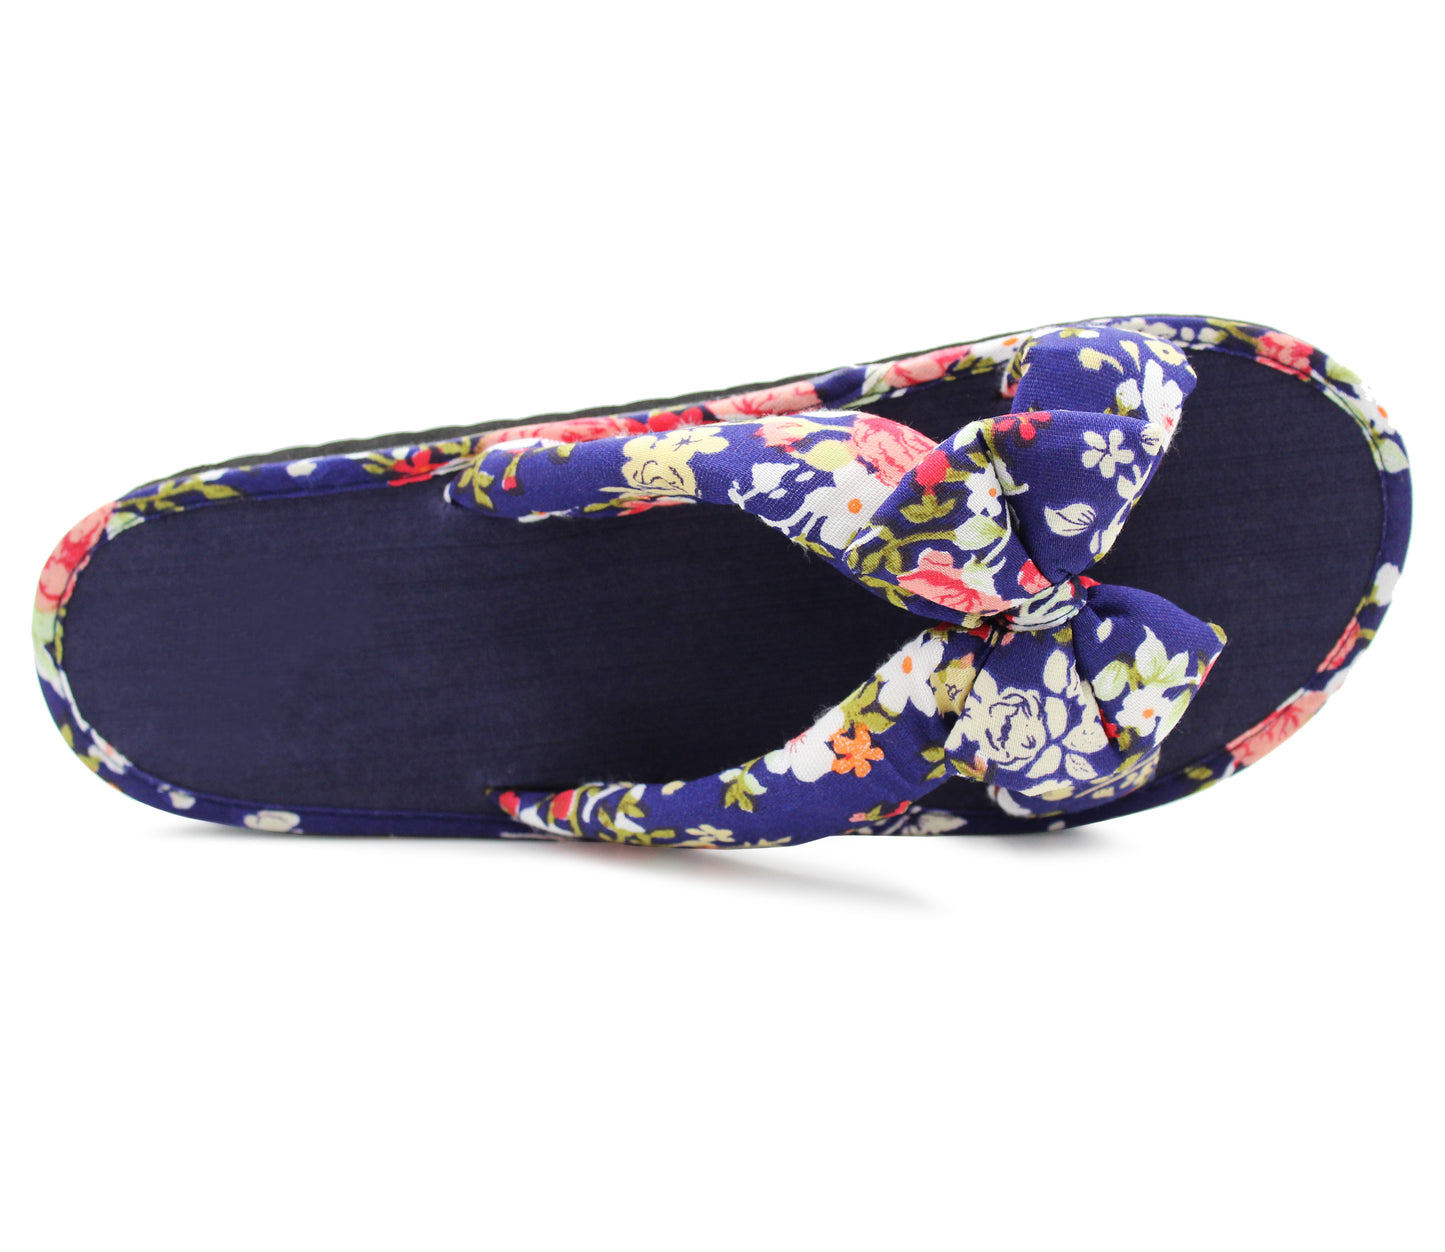 Womens Floral Mule Sandals Slip On Summer Beach Flip Flops Ladies Flat Bow Sliders Spa Pool Slides Navy Floral